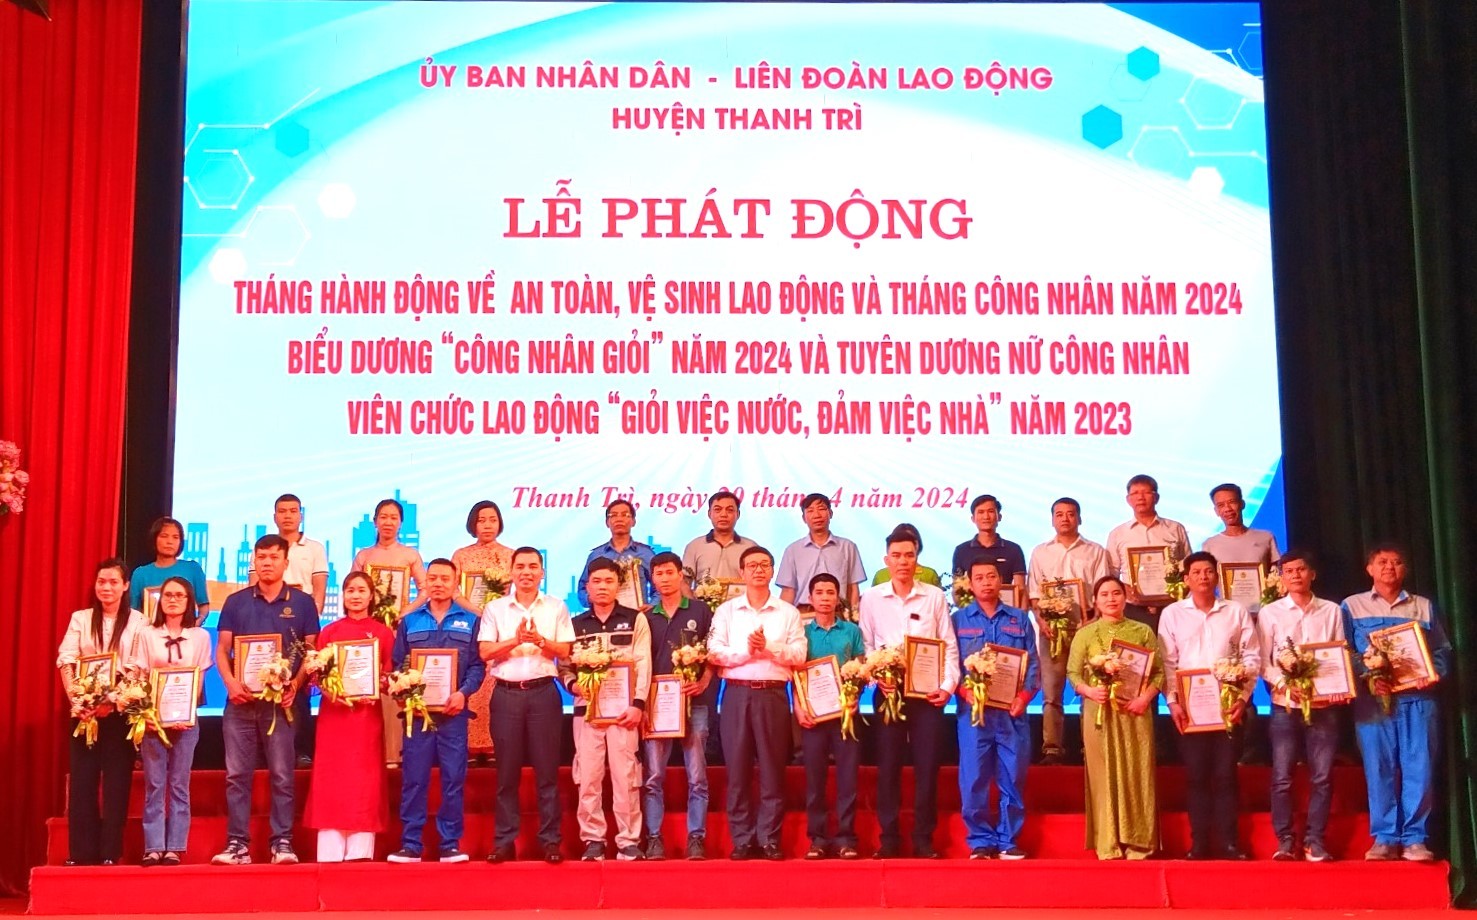 Liên đoàn Lao động huyện Thanh Trì: Cùng Công đoàn Việt Nam đổi mới và phát triển